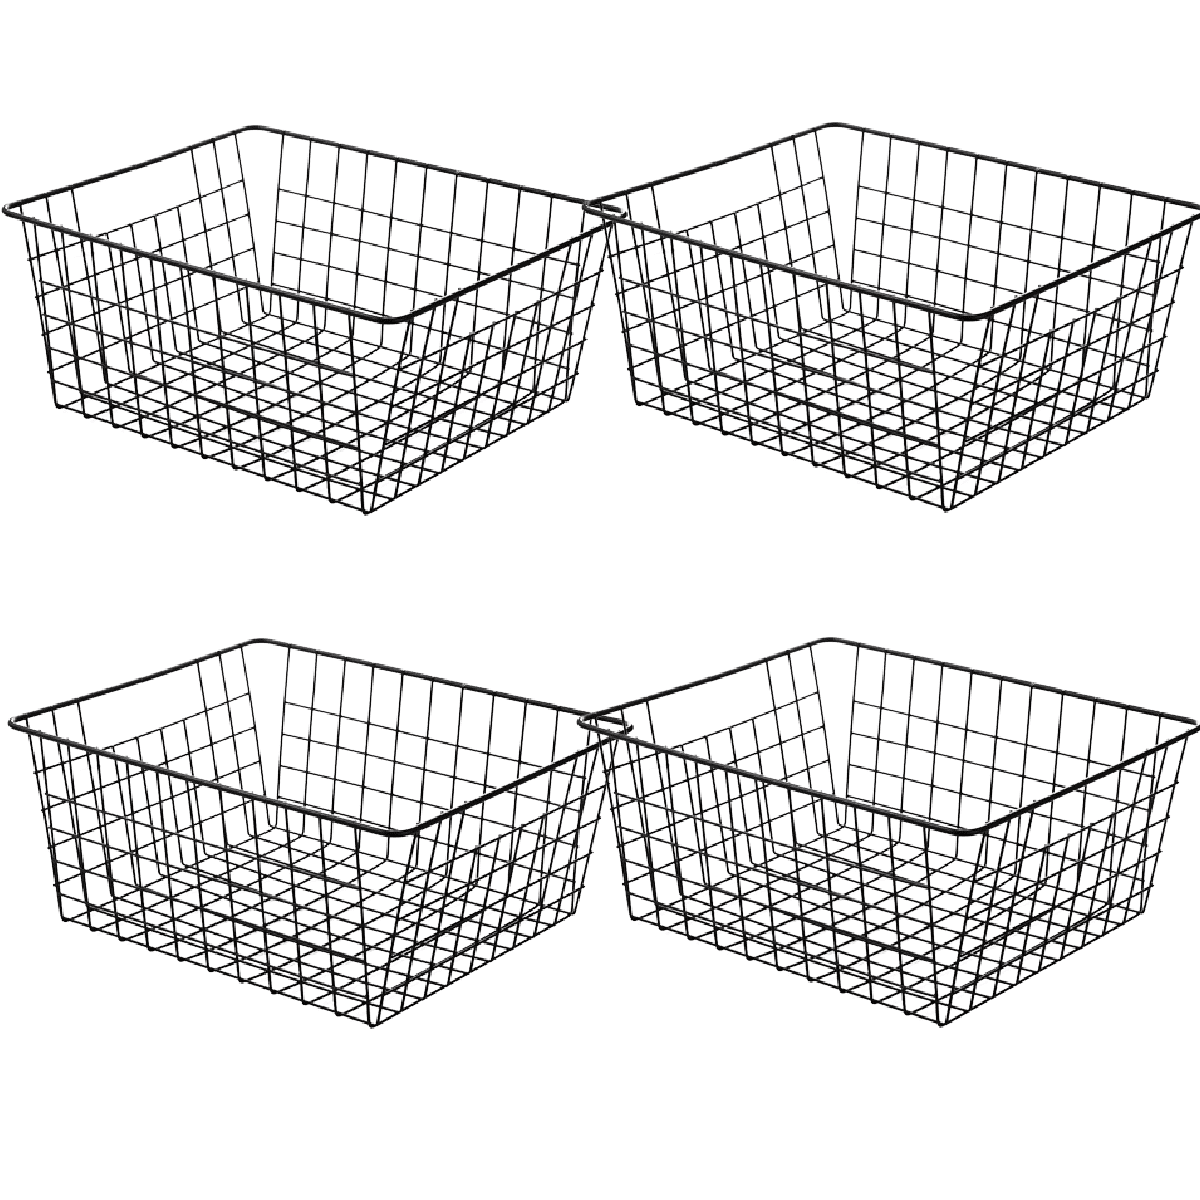 TRIANU Upright Freezer Storage Baskets, 2 Pack Black Coated Wire Storage  Bins Metal Bakset for Freezer, Pantry, Bathroom Organizing, 11.7*9.84*6.3  inch 